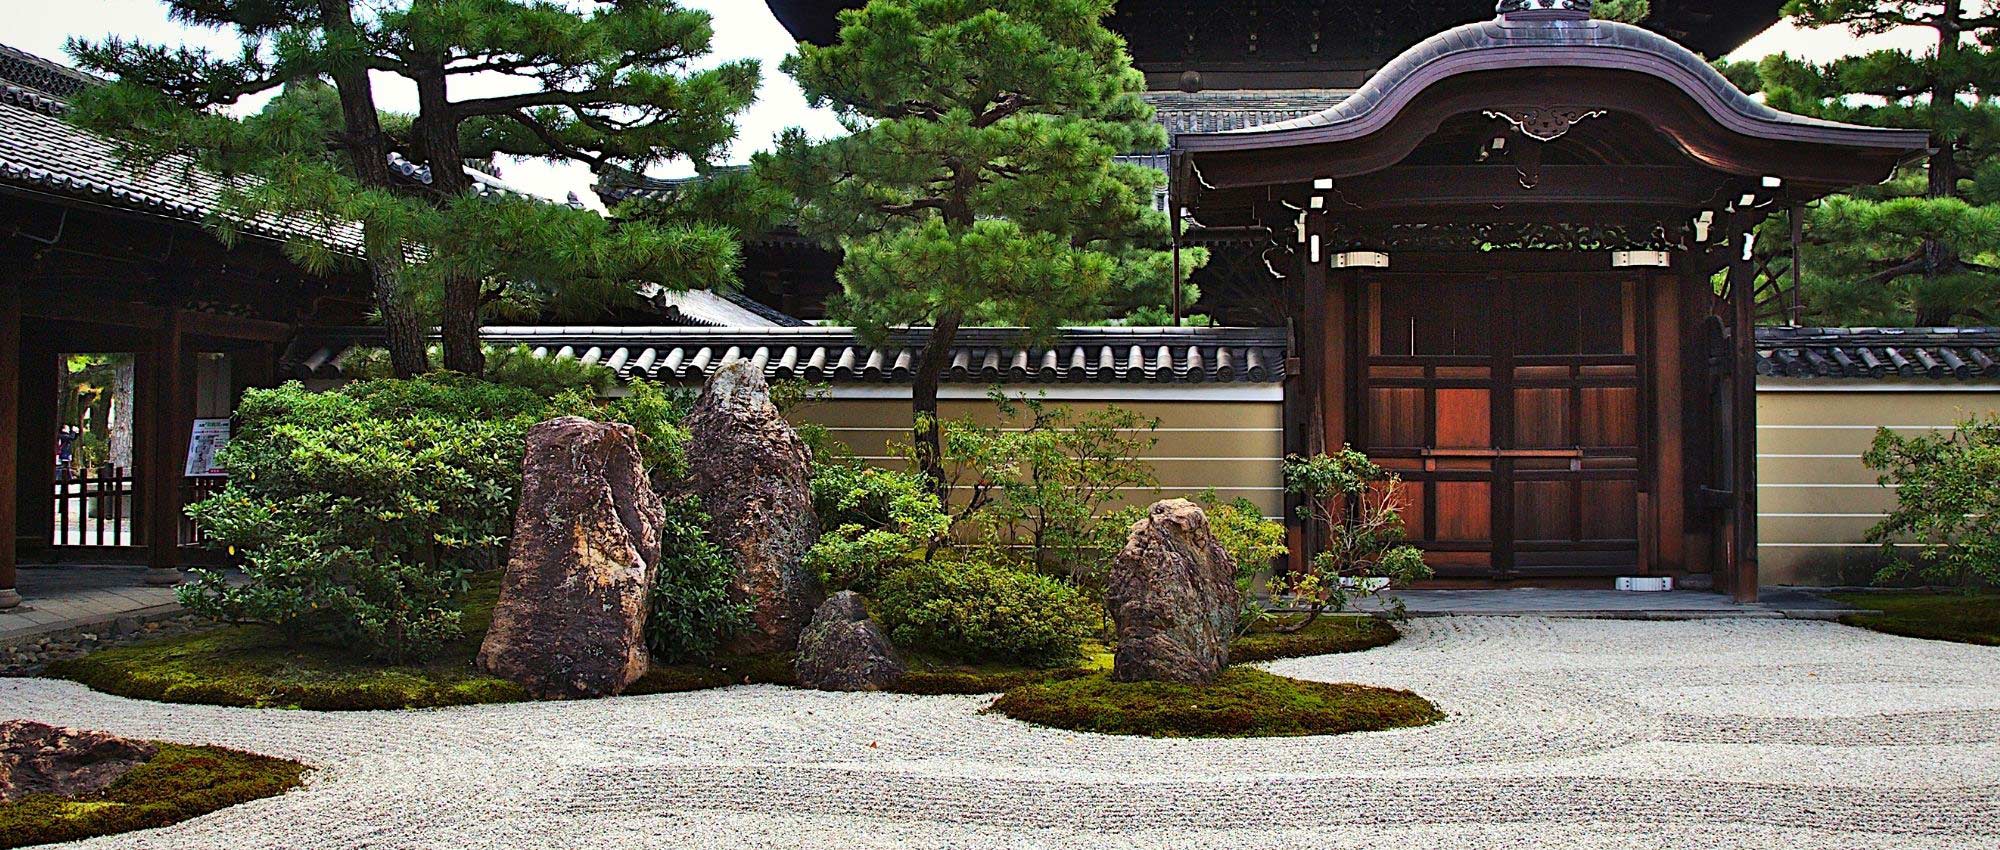 Je veux un jardin japonais !  Deco jardin zen, Jardin japonais, Jardin  asiatique